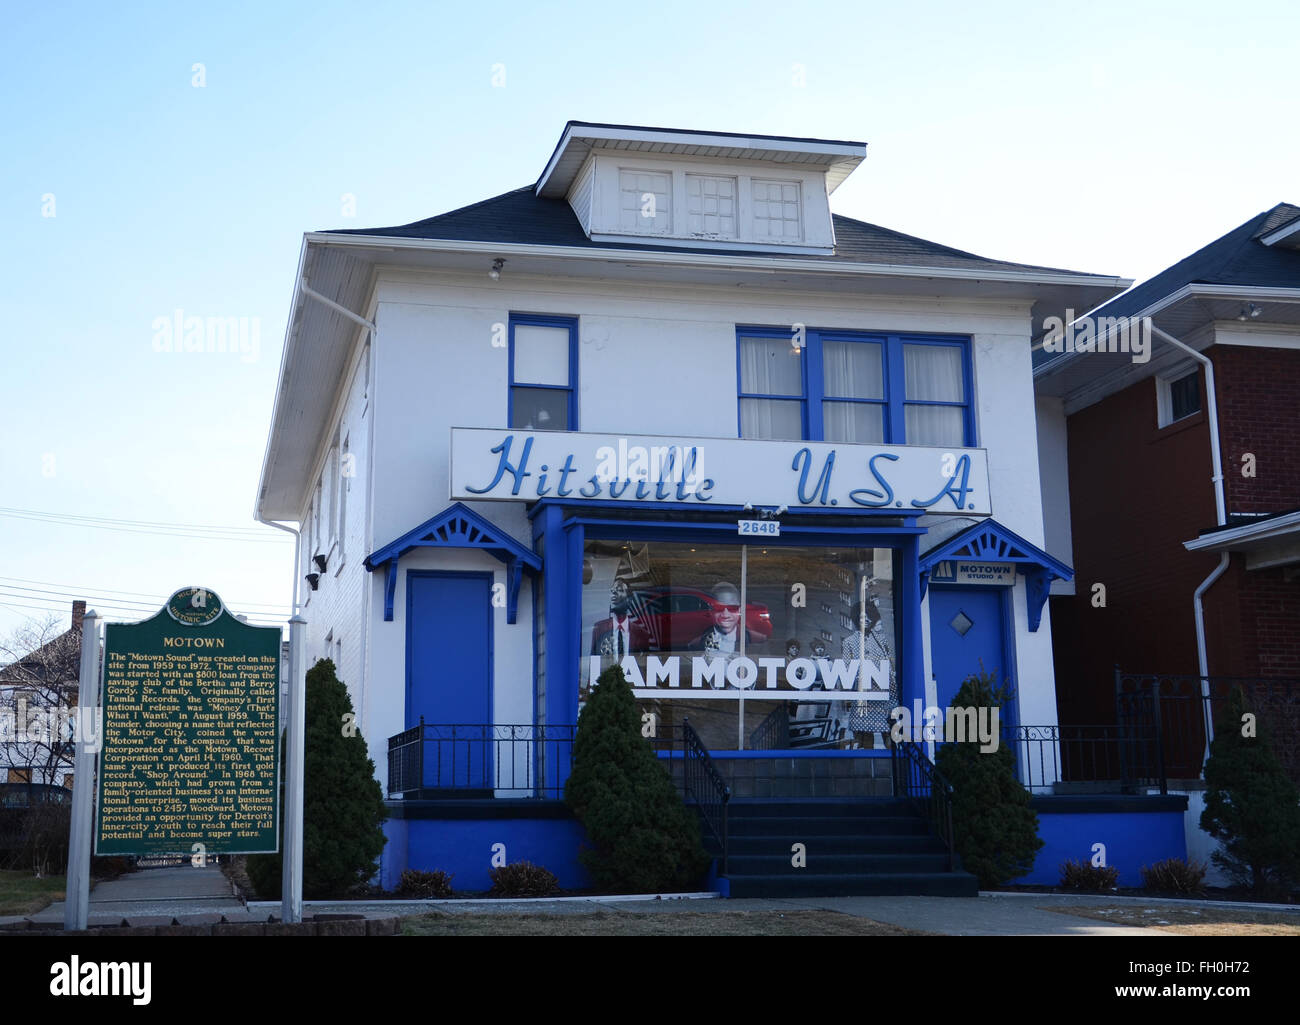 DETROIT, MI - 6 Februar: Detroit Motown Museum, gezeigt am 6. Februar 2016, befindet sich in der berühmten Hitsville, USA bauen. Stockfoto